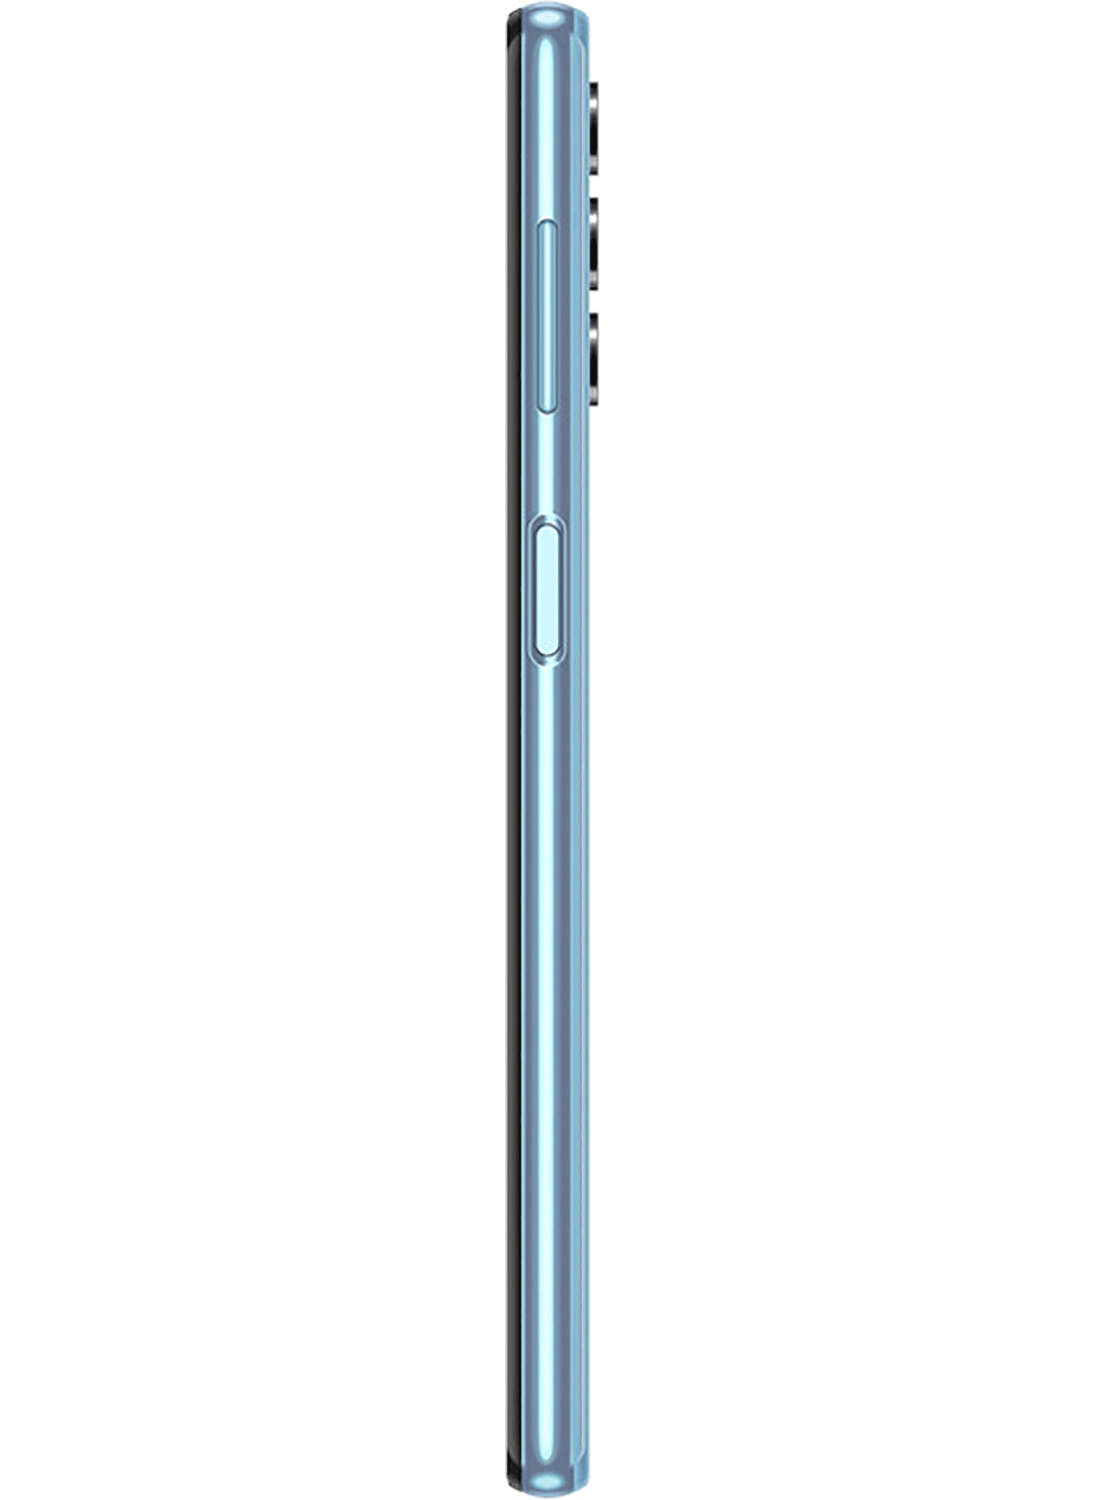 Samsung Galaxy A32 5G SM-A326B Dual Sim